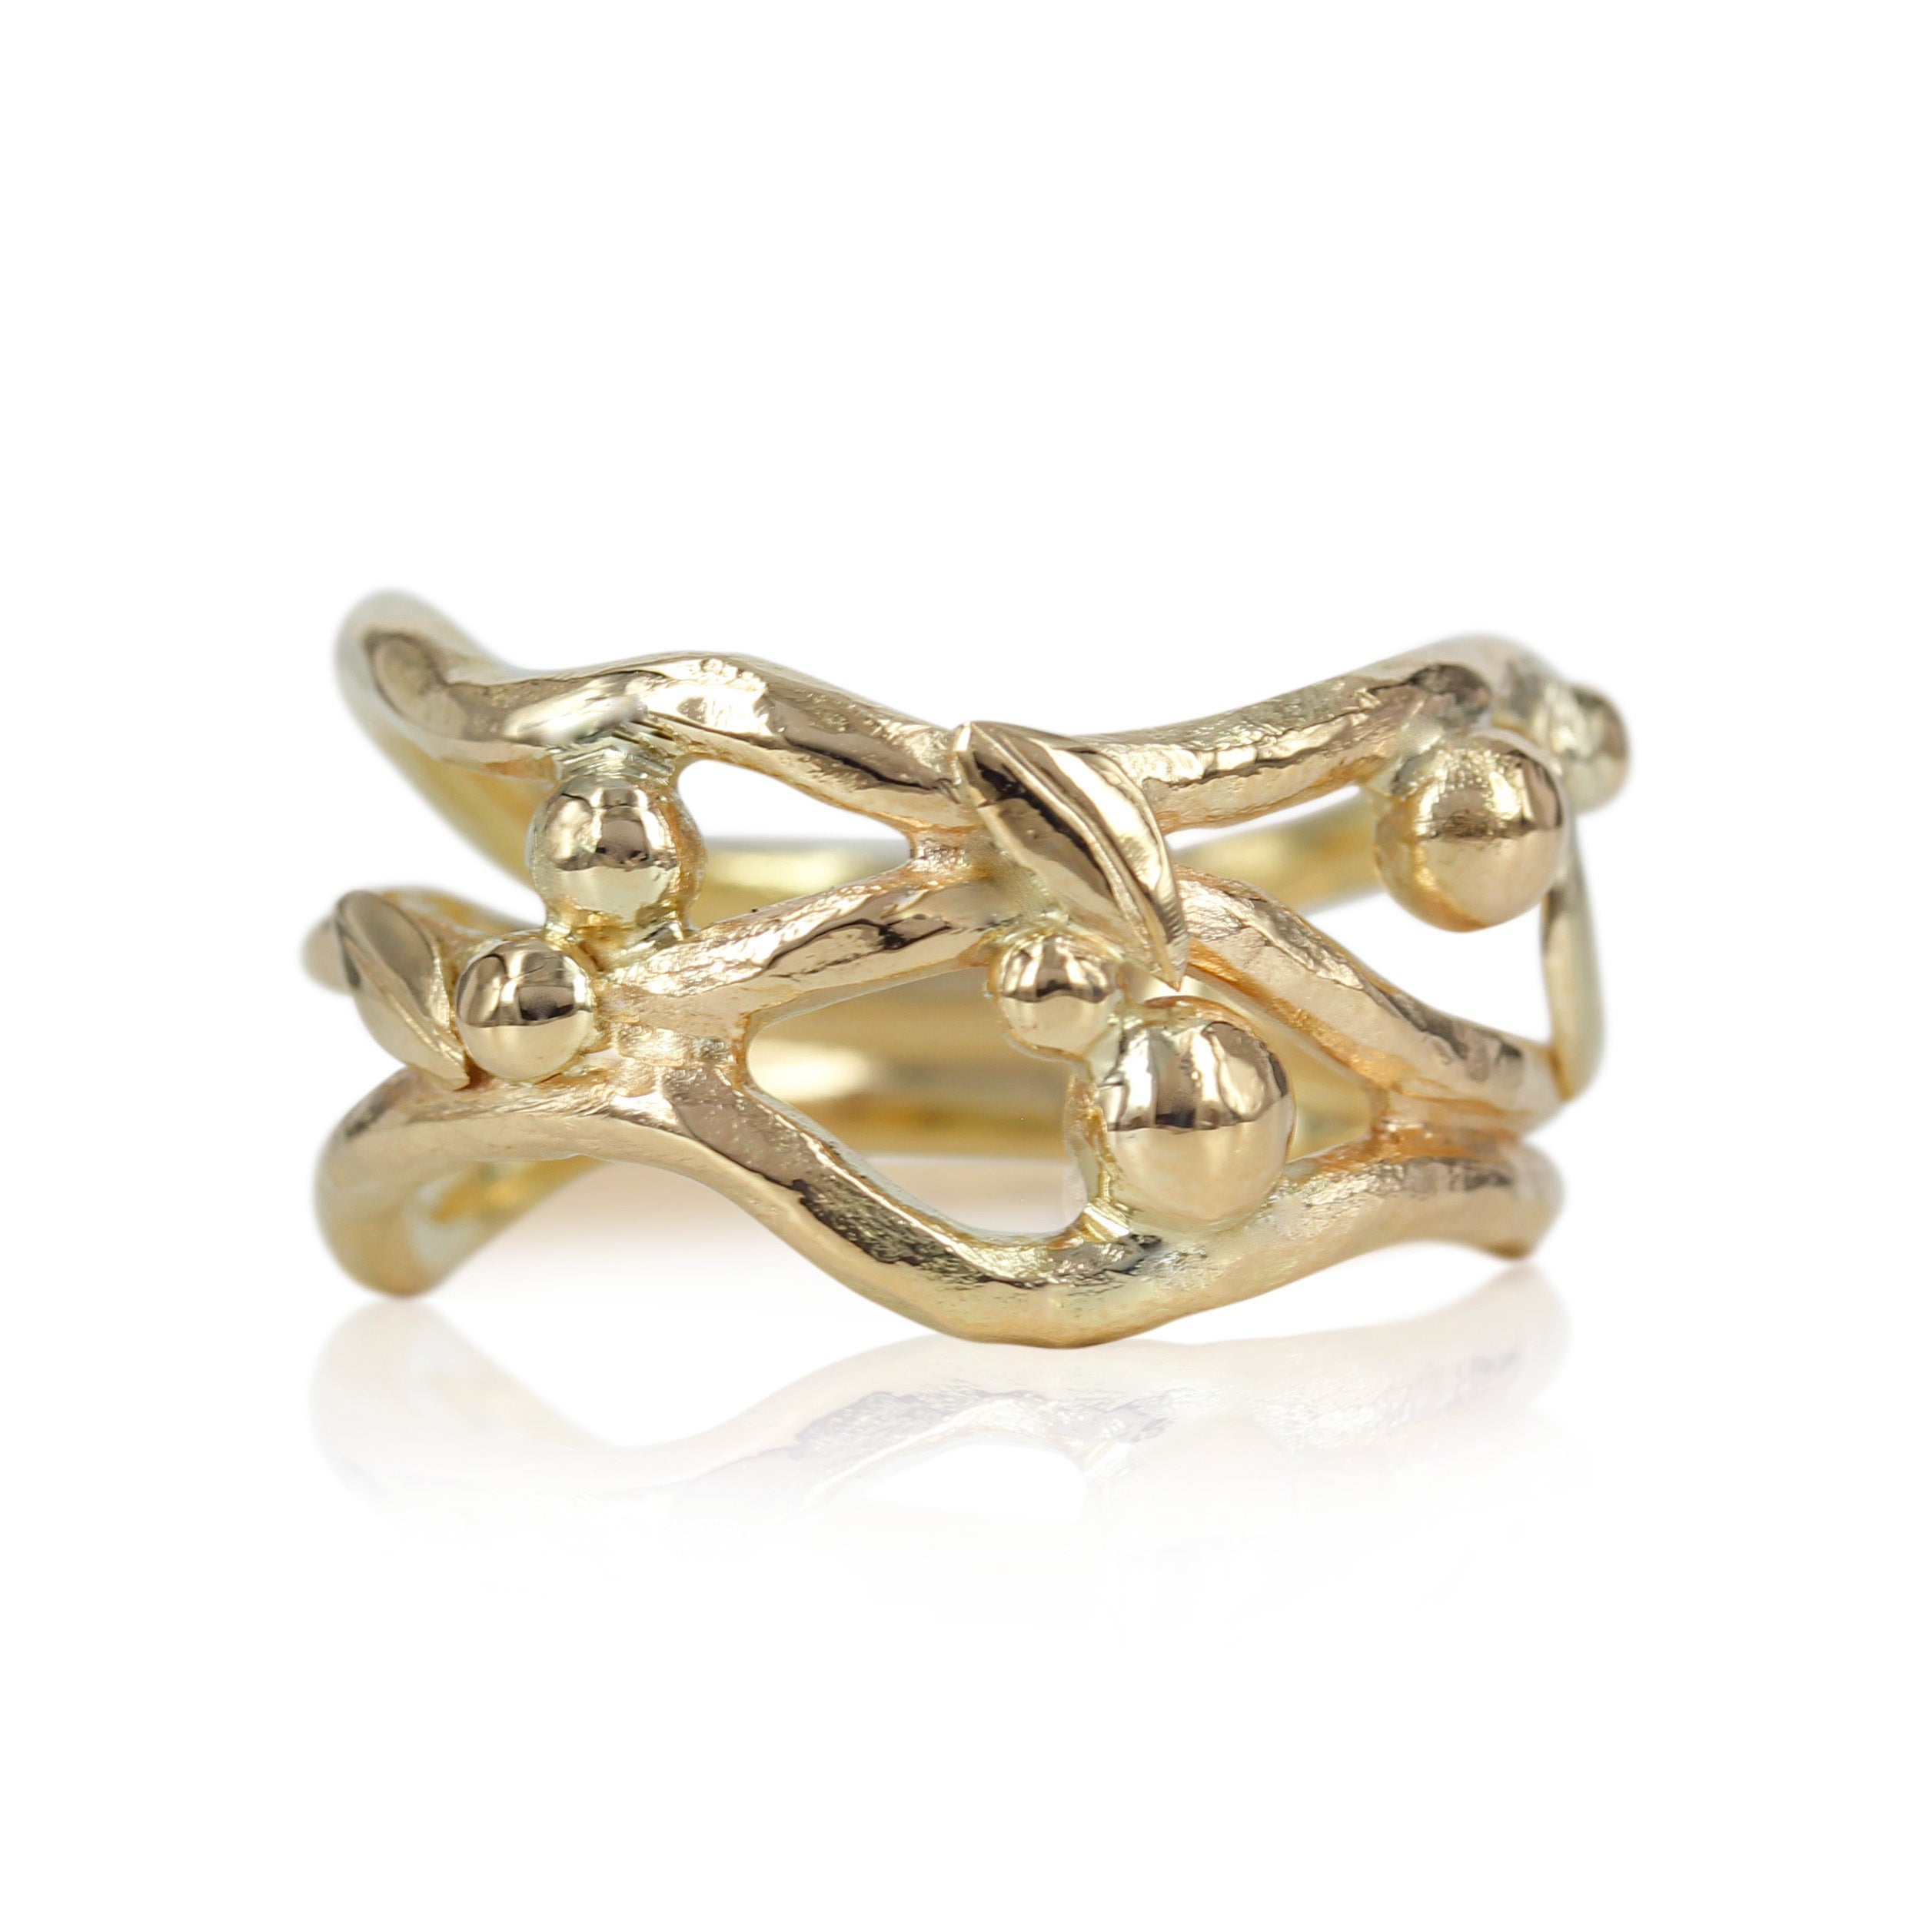 Smuk unika ring skabt med smuk rustik overflade, de fine guld kugler og fine blomster giver ringen en fornemmelse af forår.  En fantastisk ring der kan bærer både til hverdag og til fest.